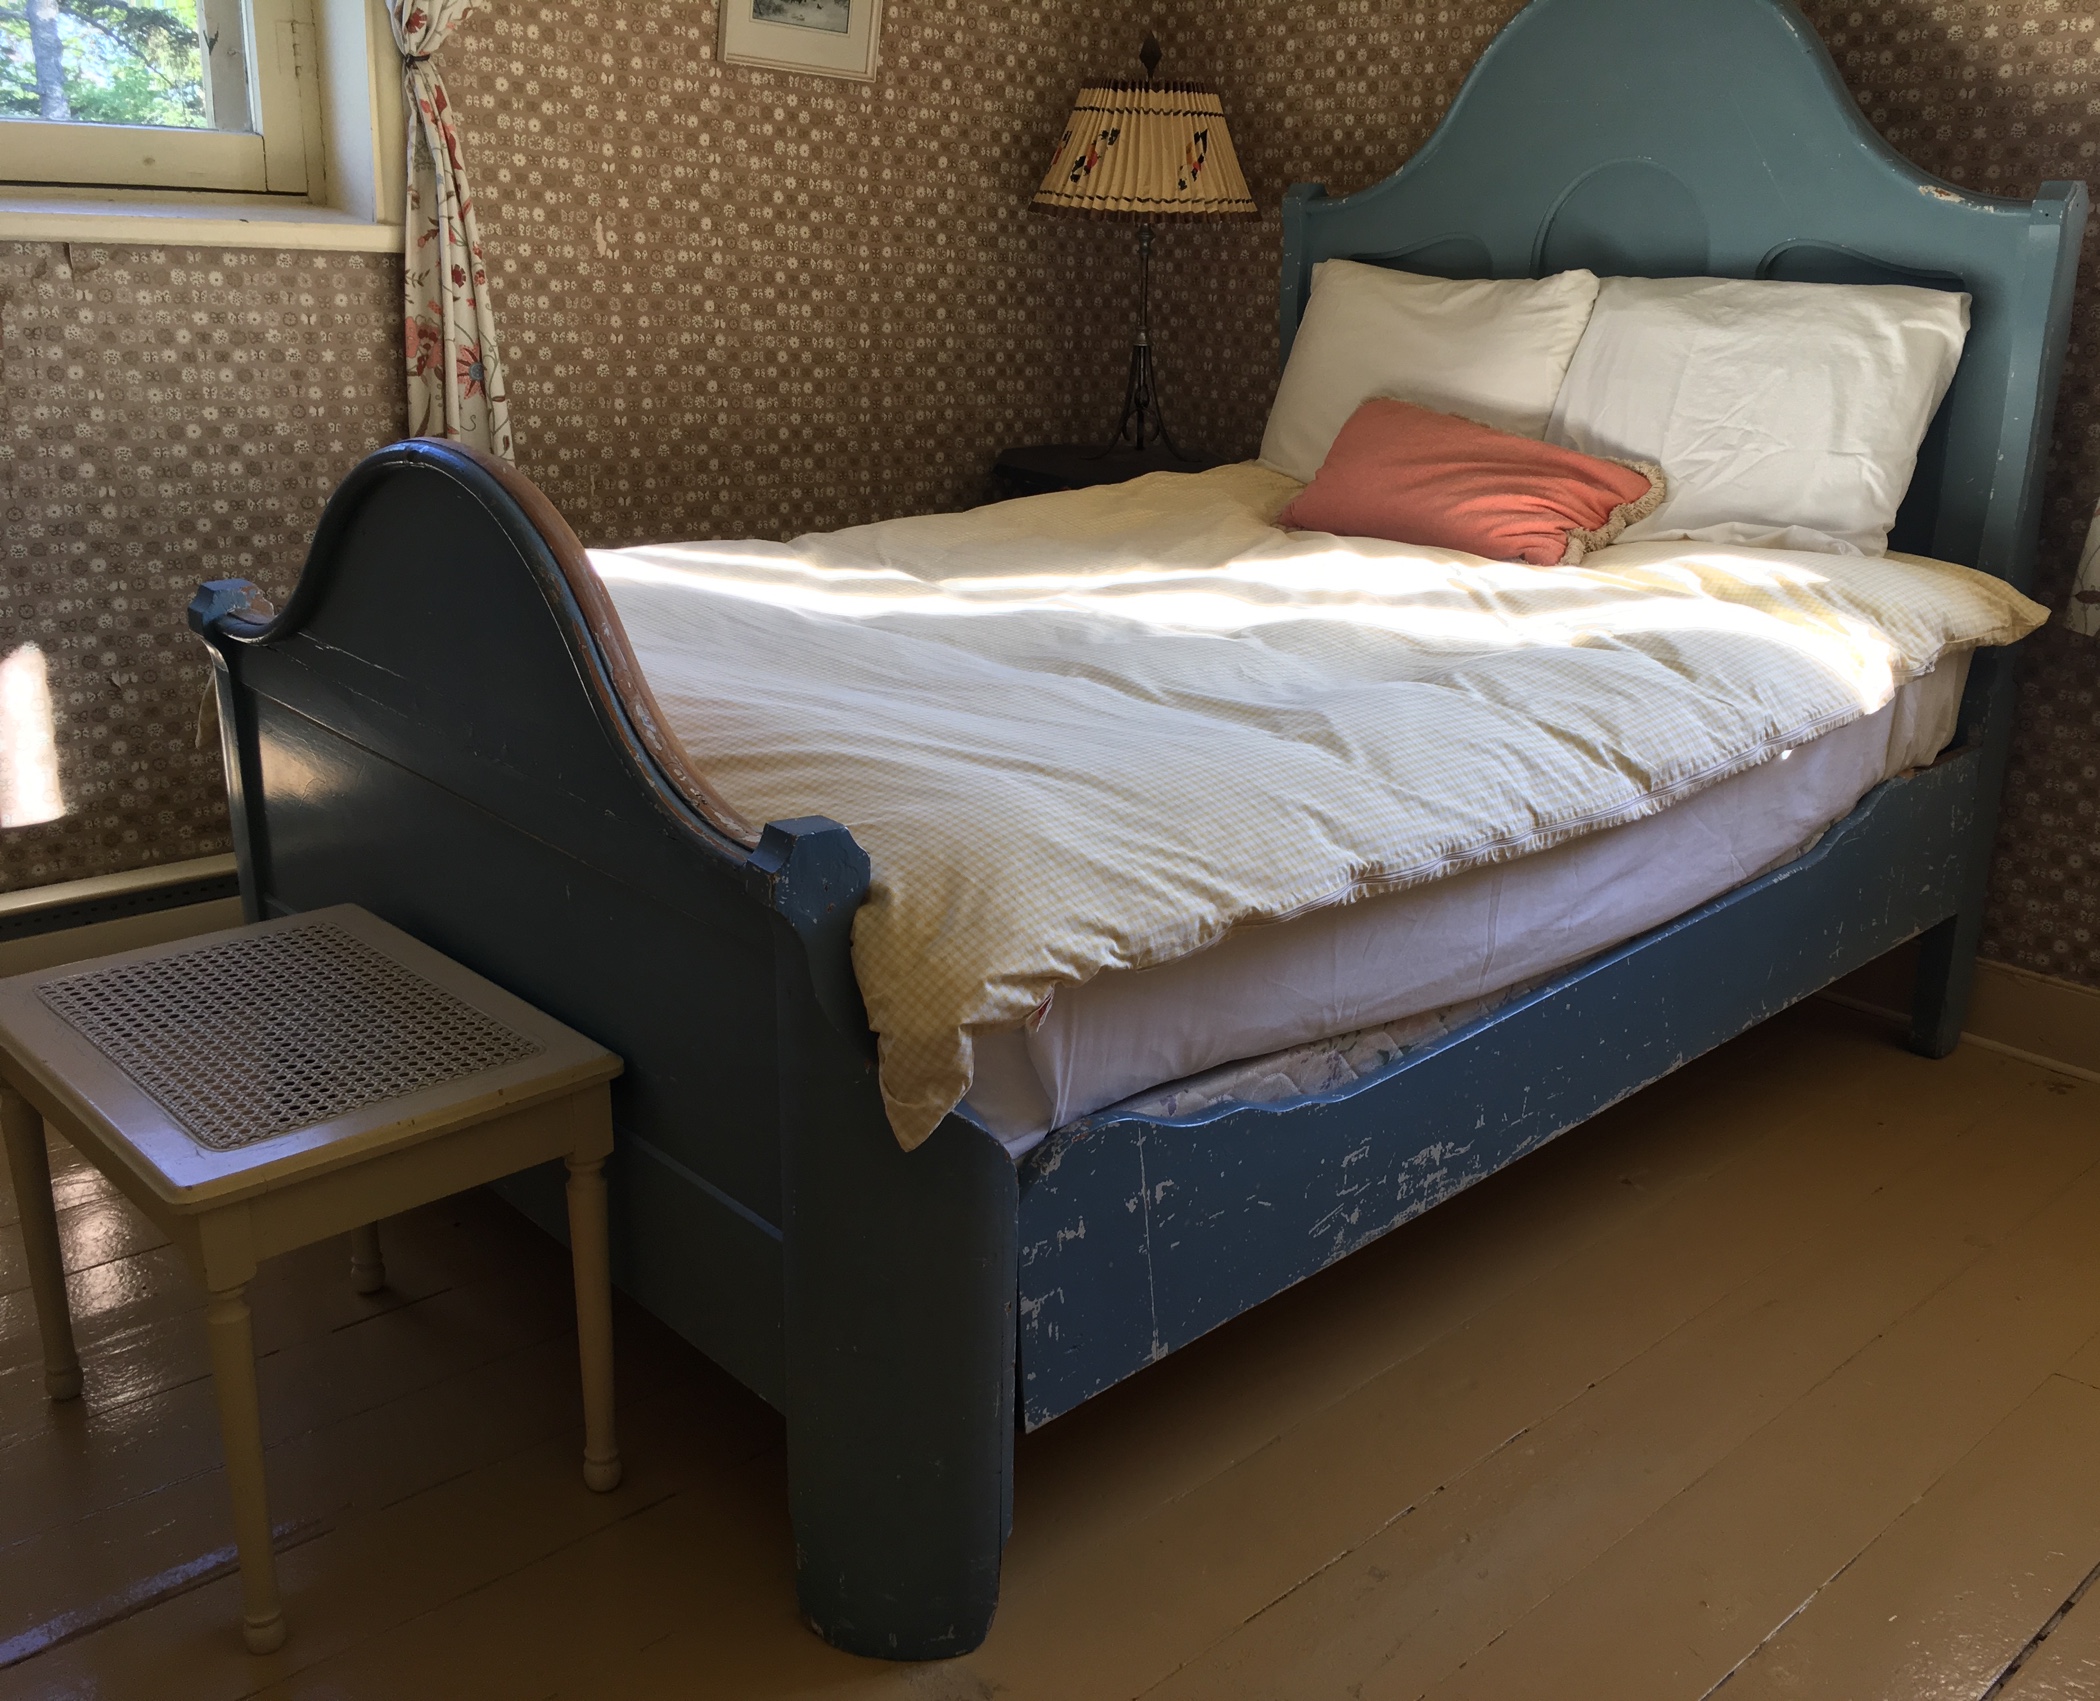 Photographie couleur d’un lit antique, le lit de Sir John A., en bois trois quarts, à tête haute et à pied plus bas, dont la peinture de couleur bleue est écaillée de façon marquée sur son côté. 